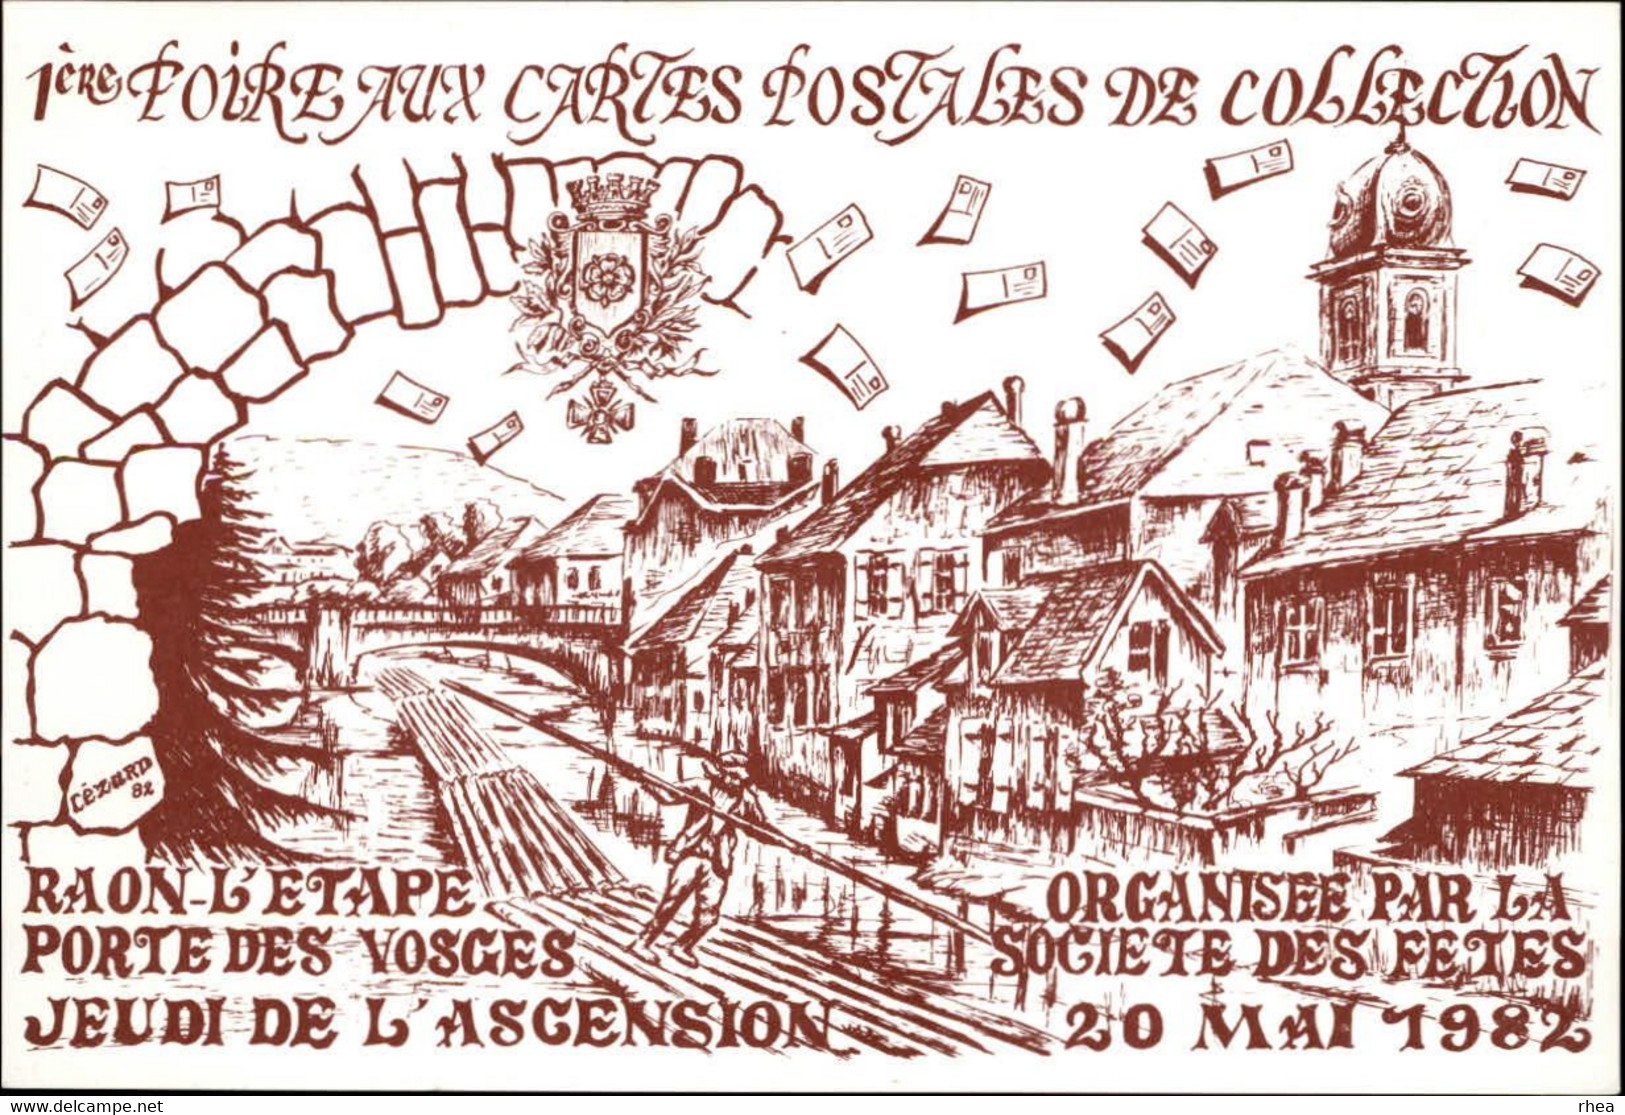 SALONS DE COLLECTIONS - 2 Cartes - Salon De Cartes Postales -  88 RAON L'ETAPE - 1984 Et 1982 - Bourses & Salons De Collections